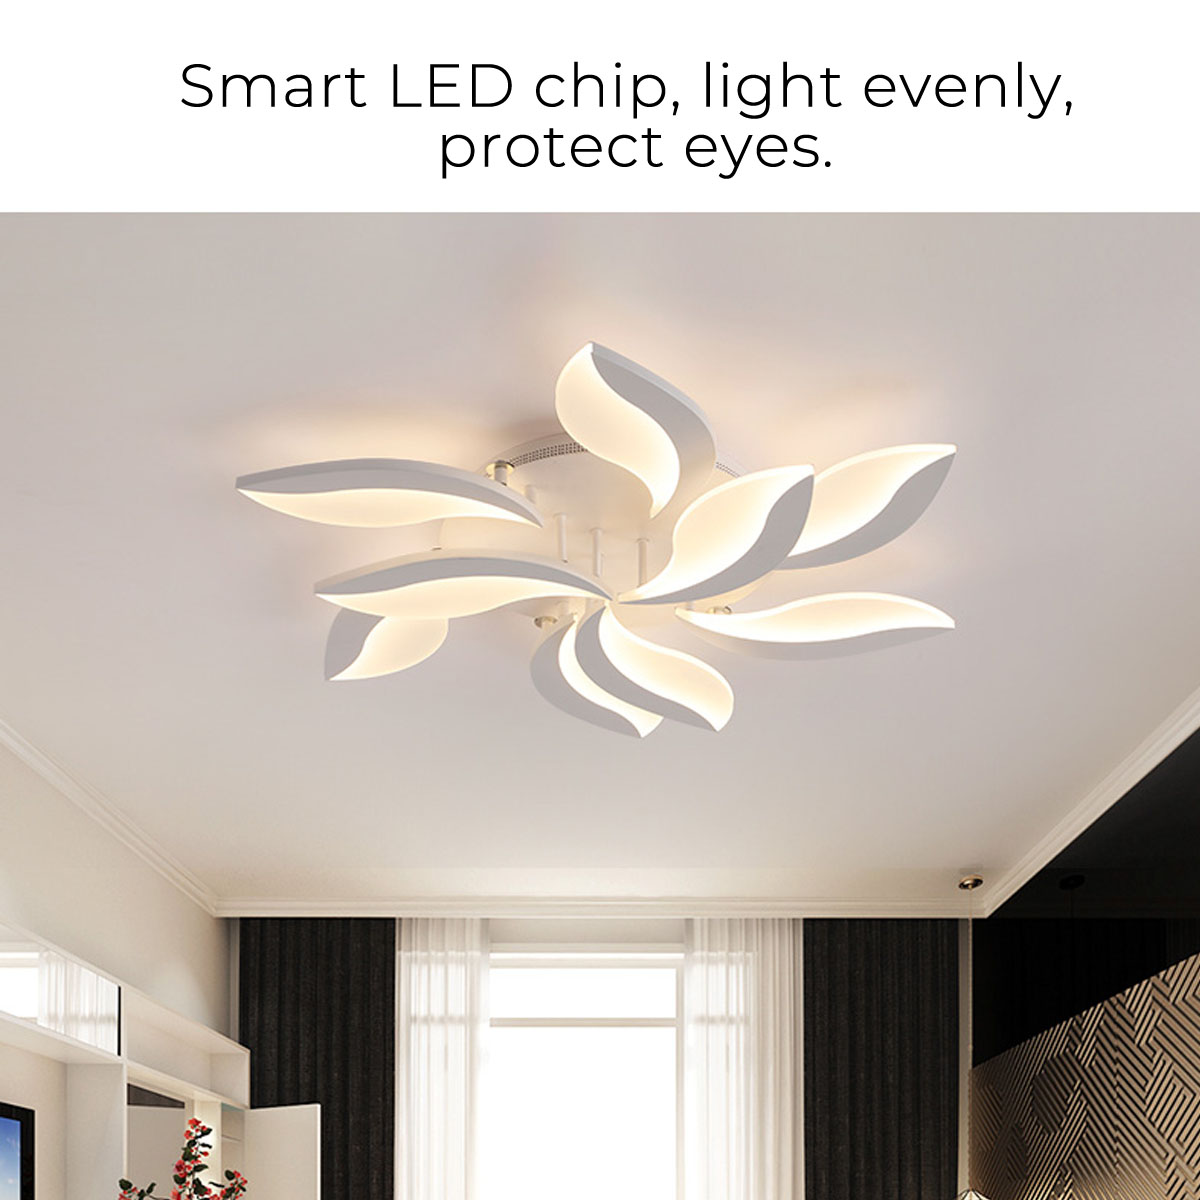 110-220V-LED-Ceiling-Light-Fixture-Pendant-Lamp-Lighting-Flush-Mount-Room-Chandelier-1794831-7